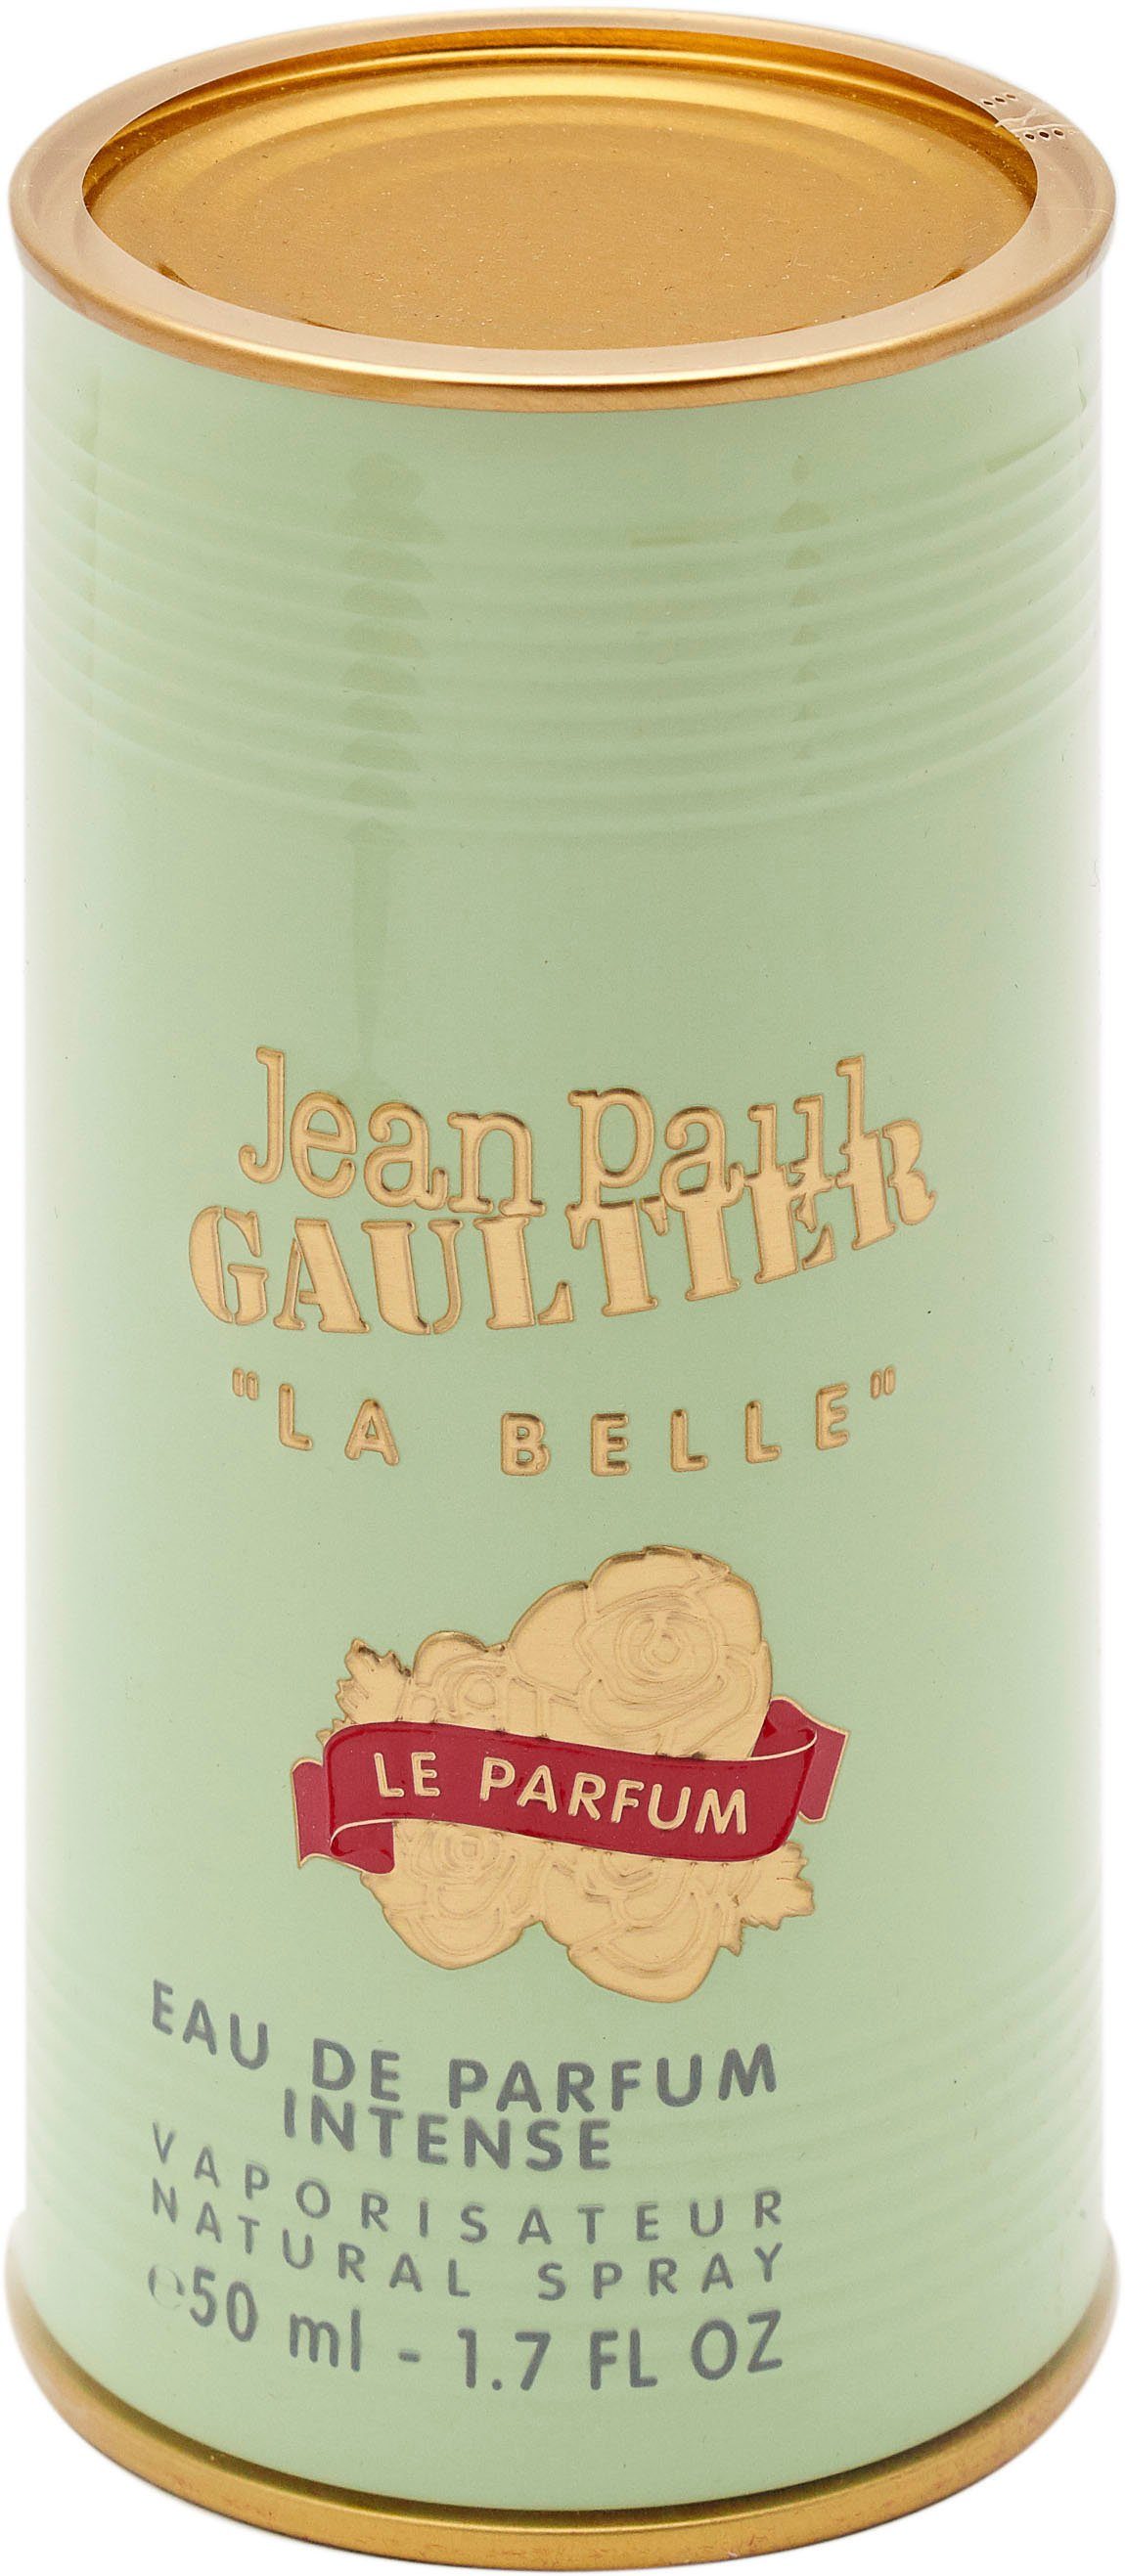 PAUL de Belle JEAN La Parfum Parfum Eau GAULTIER le